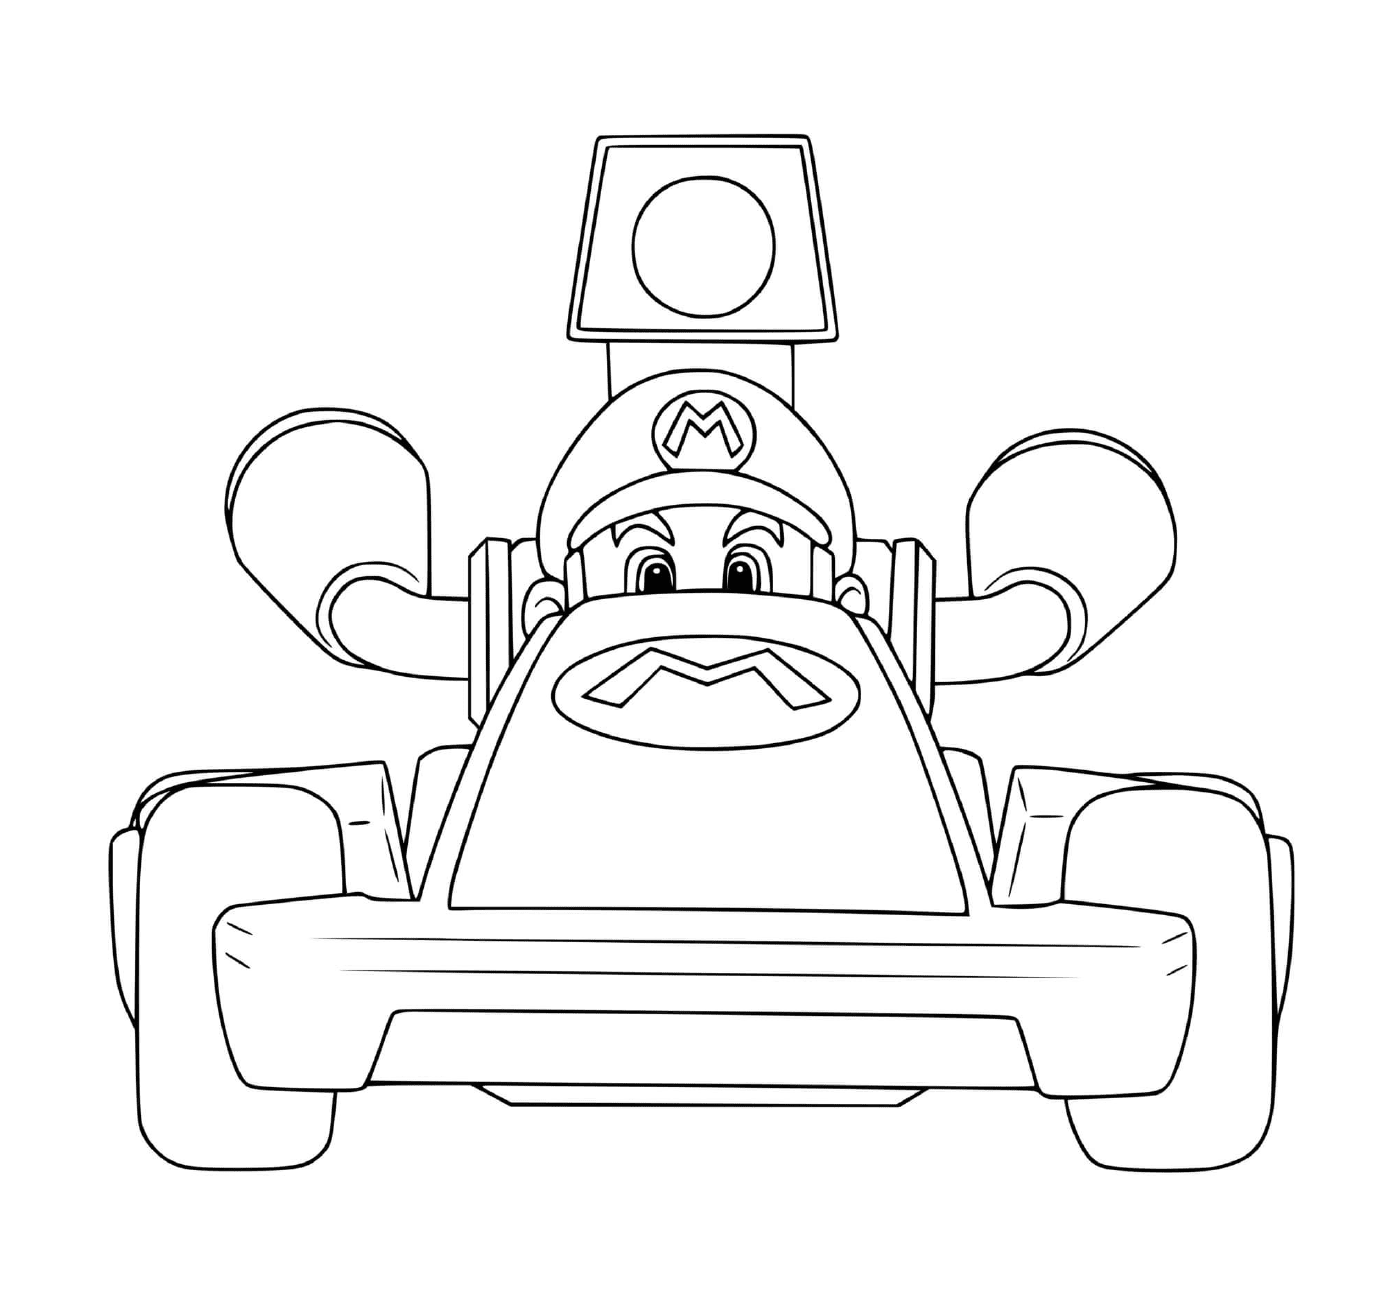  A Mario Kart character 